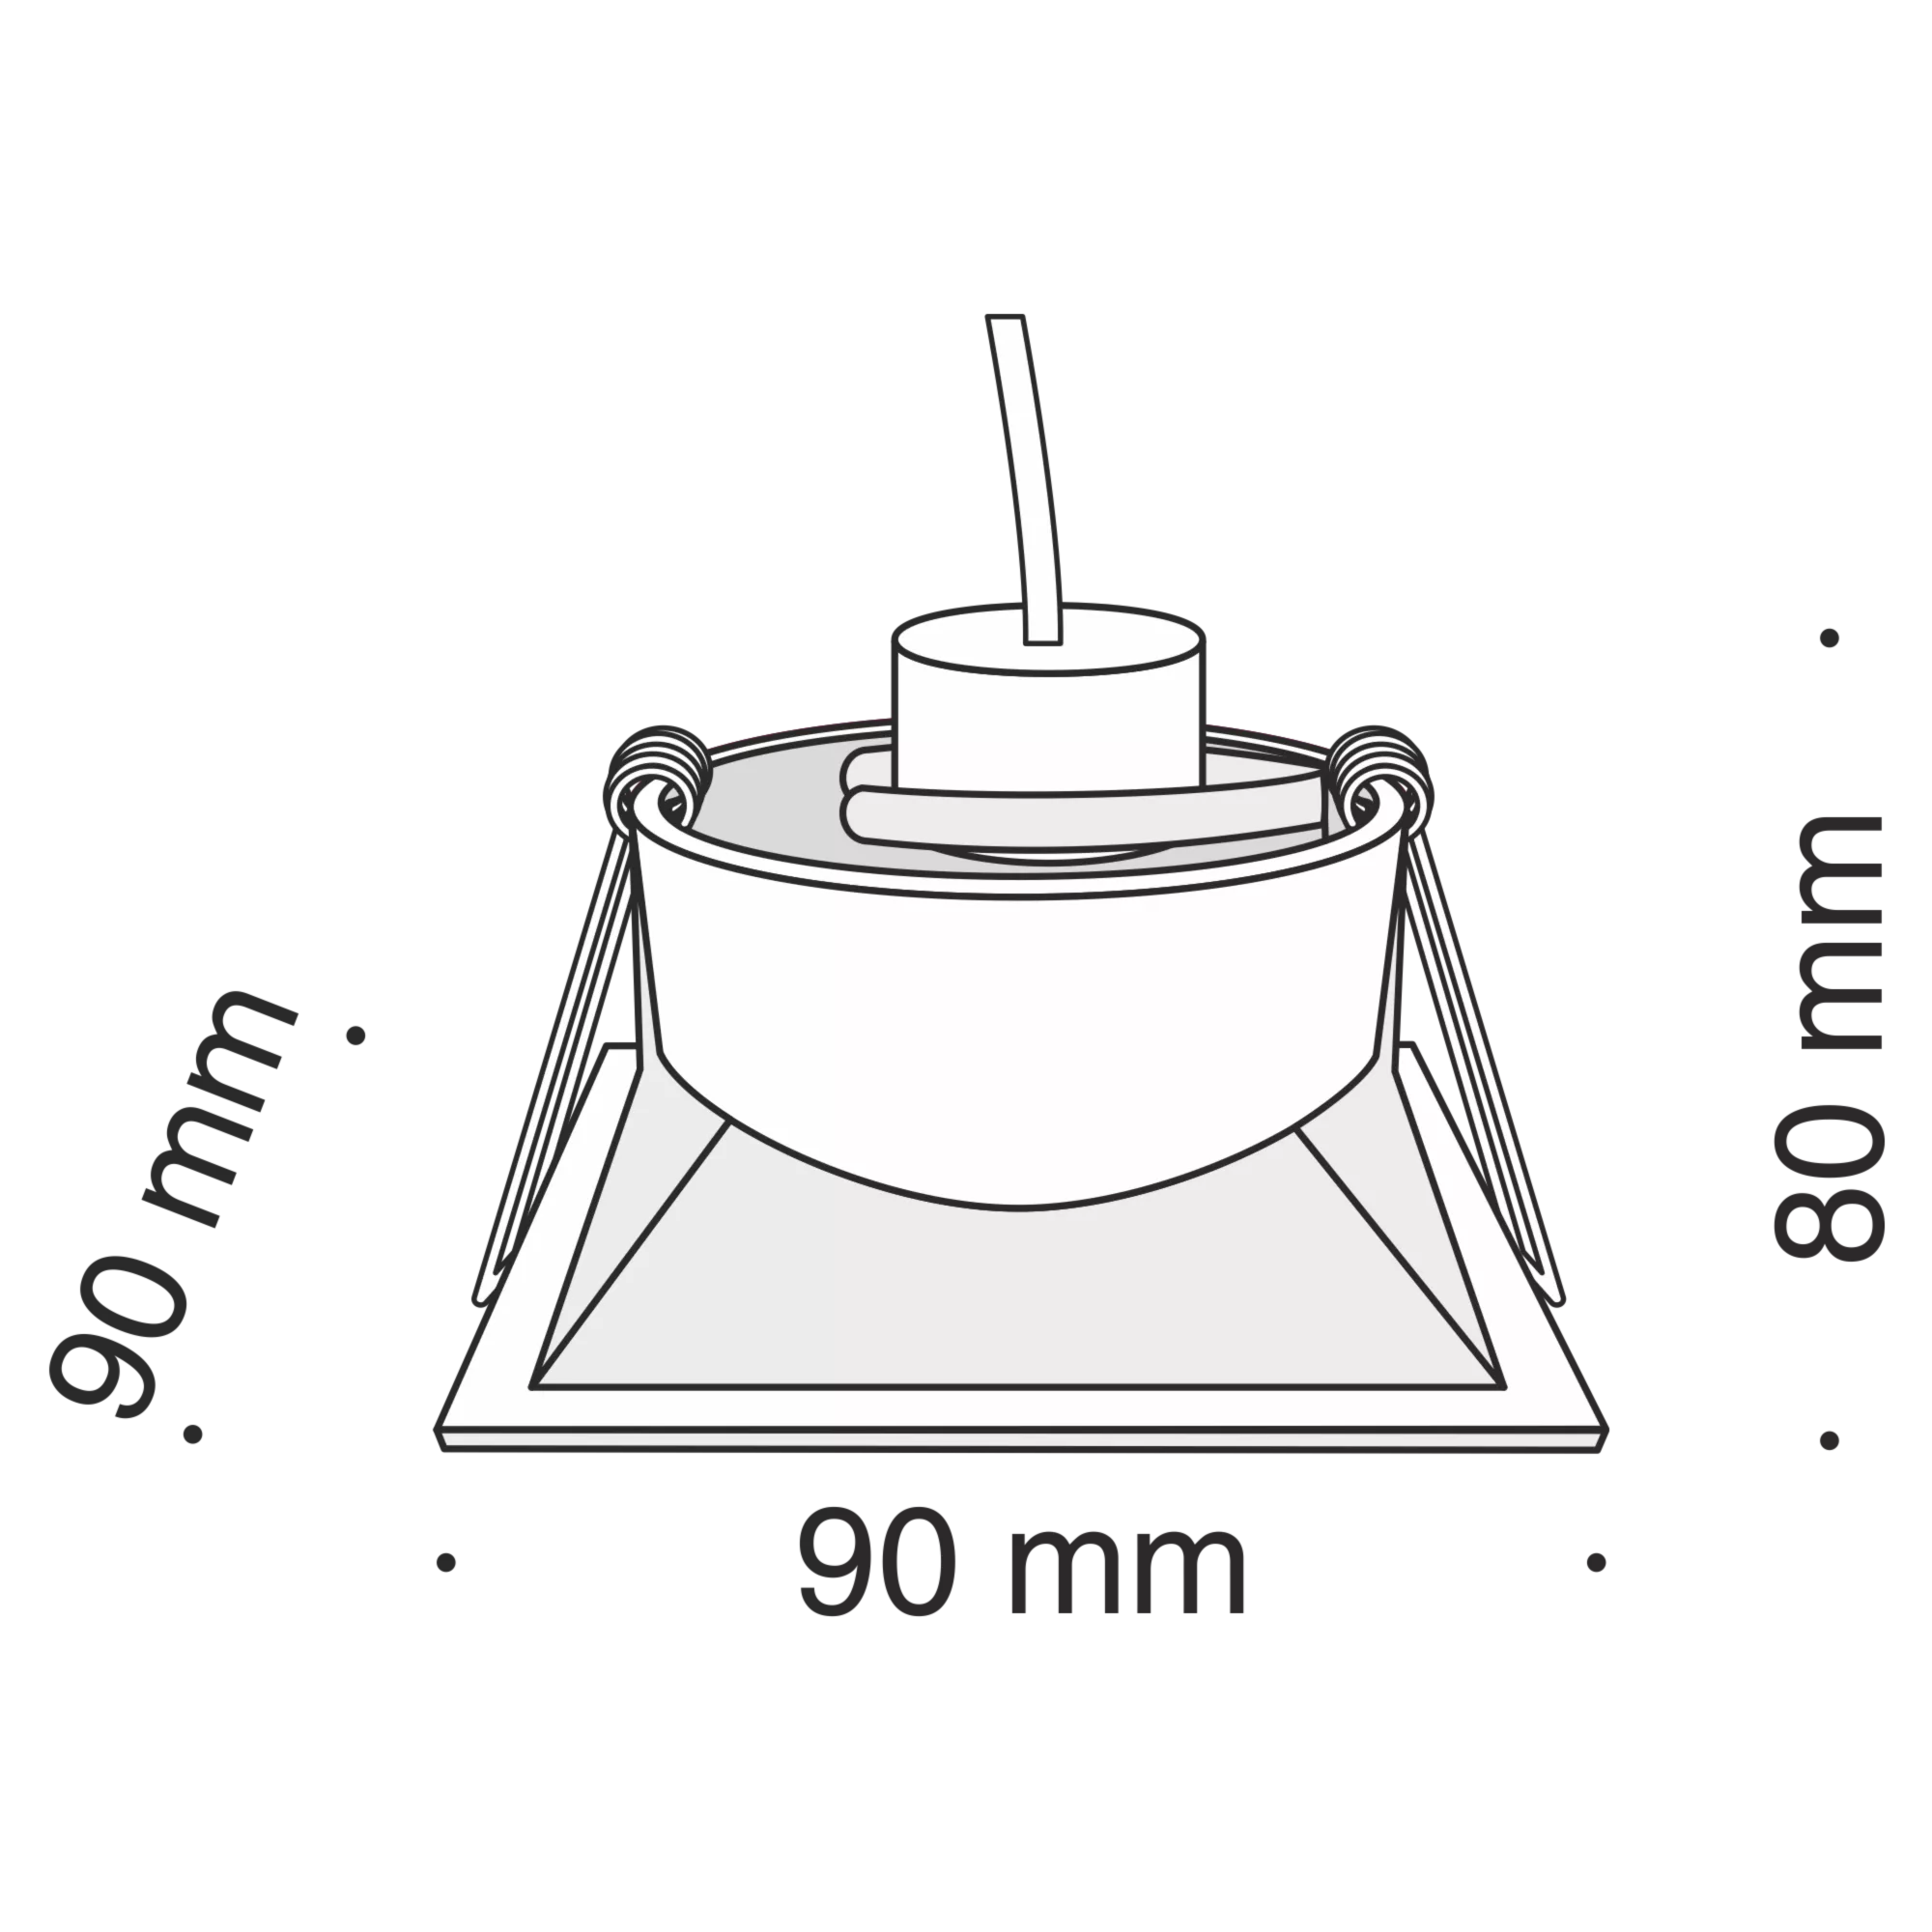 Точечный встраиваемый светильник Maytoni Technical Dot DL029-2-01B